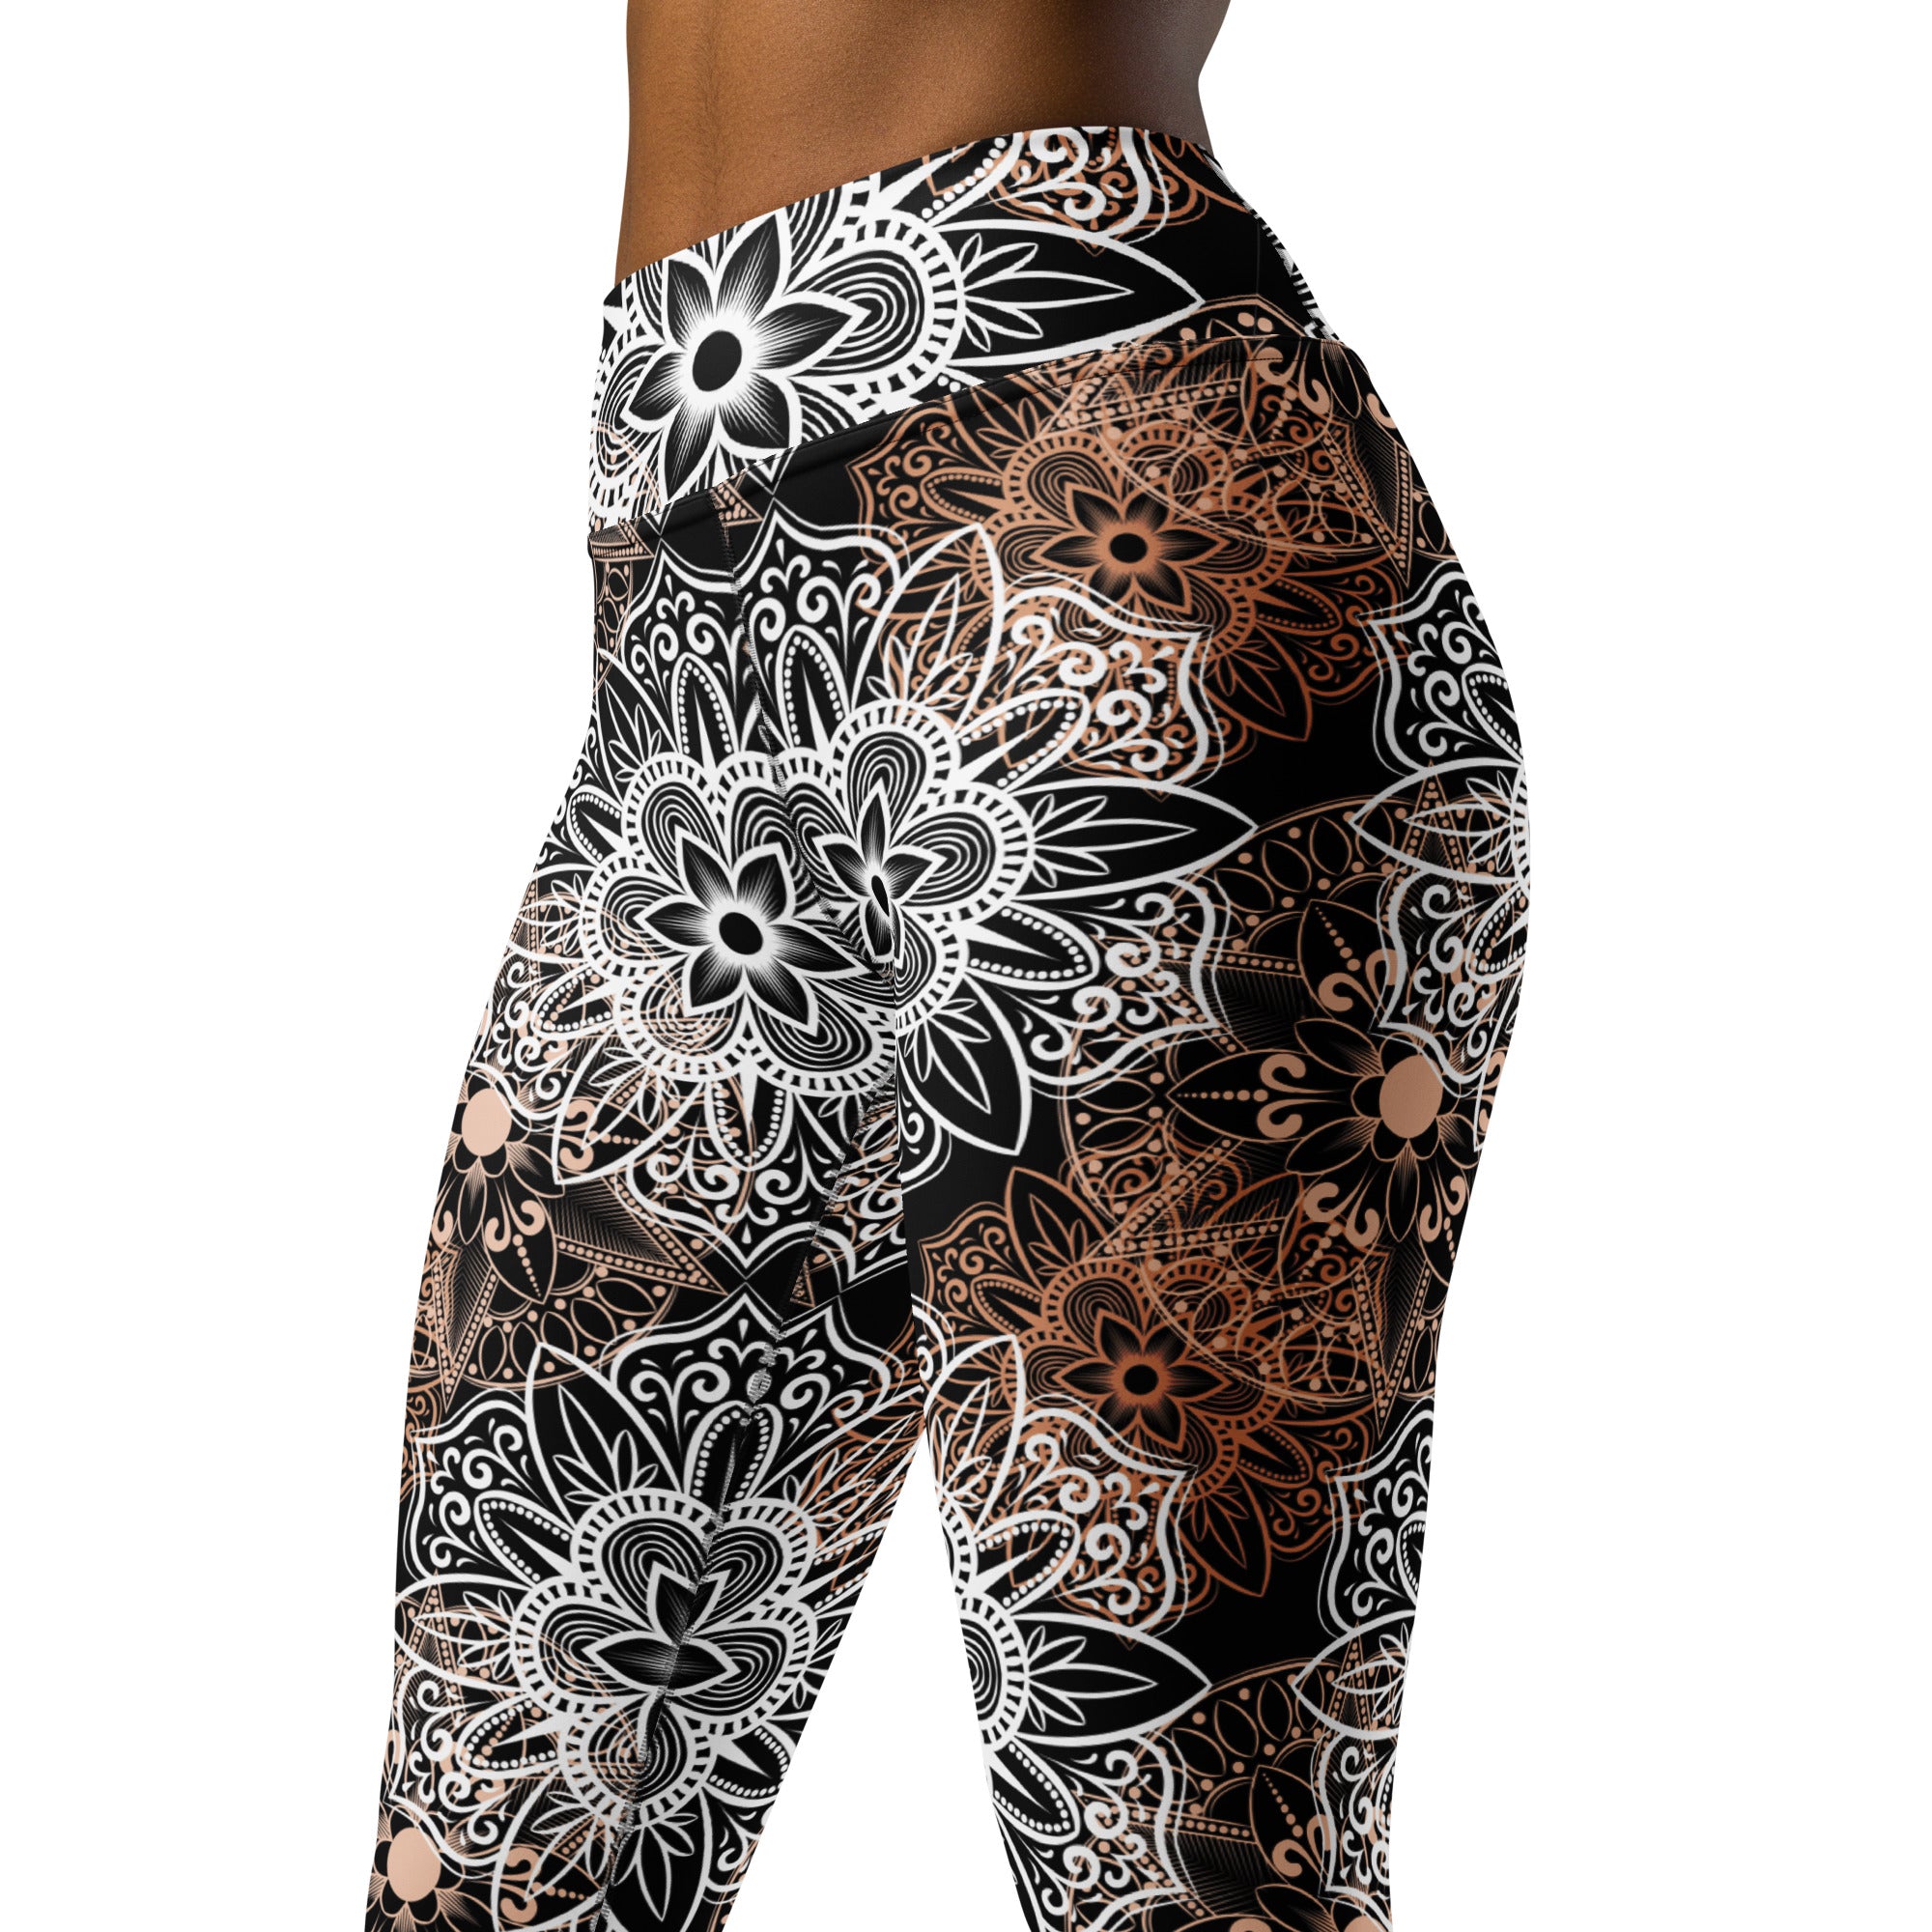 Yoga Leggings- Mandala Brown and Black